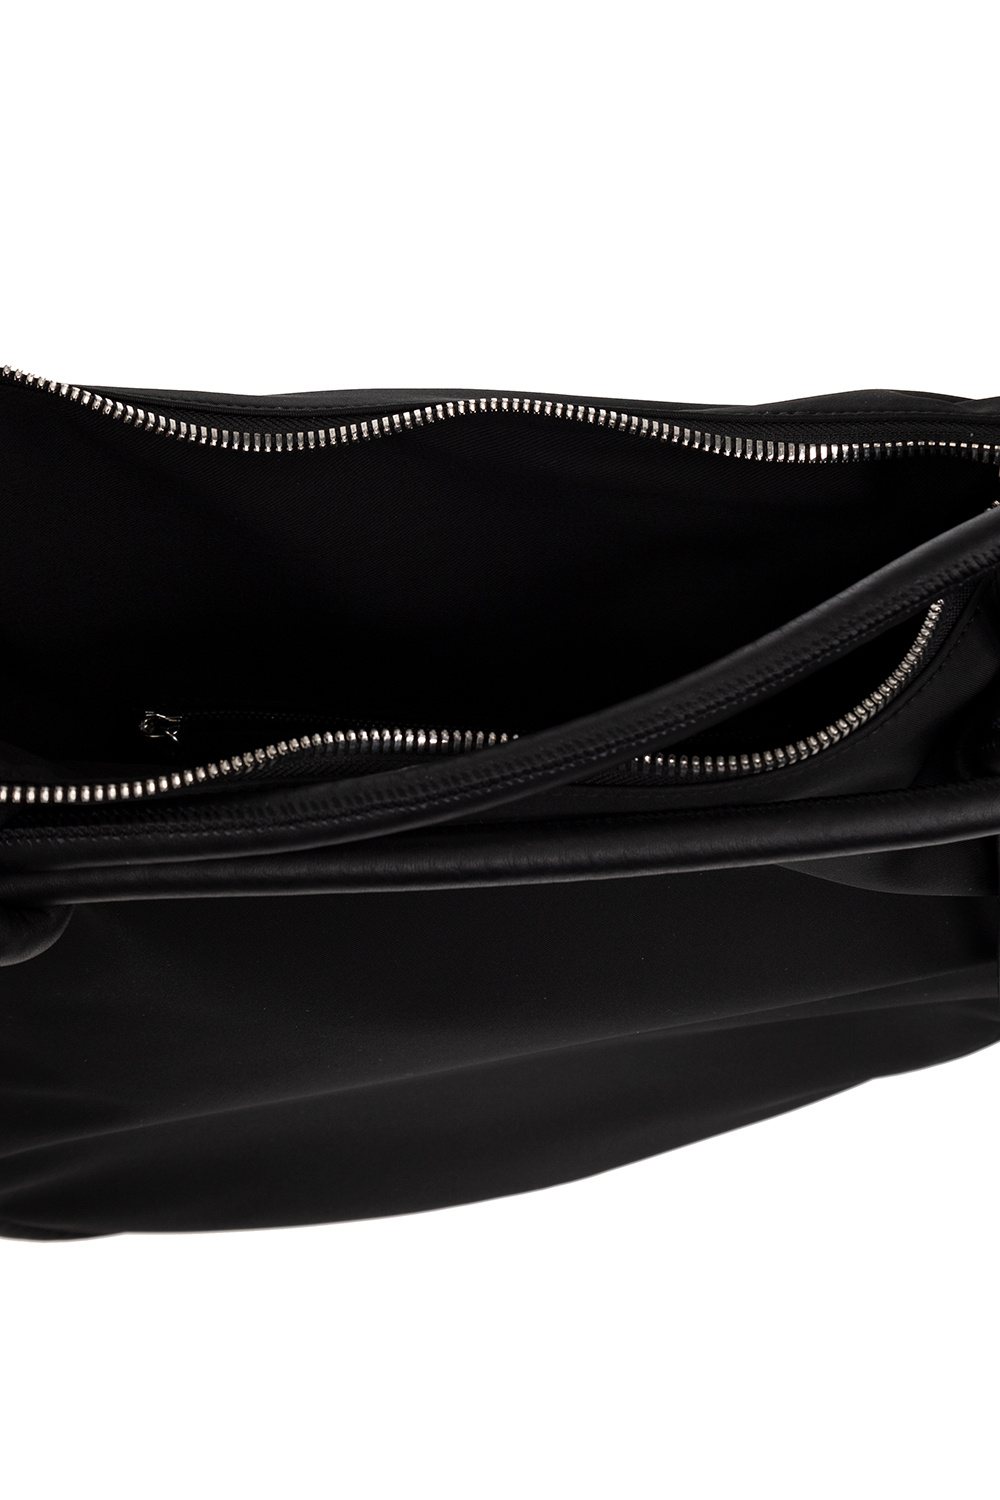 Louis Vuitton 2010 pre-owned Ceinture Pochette Duo belt bag